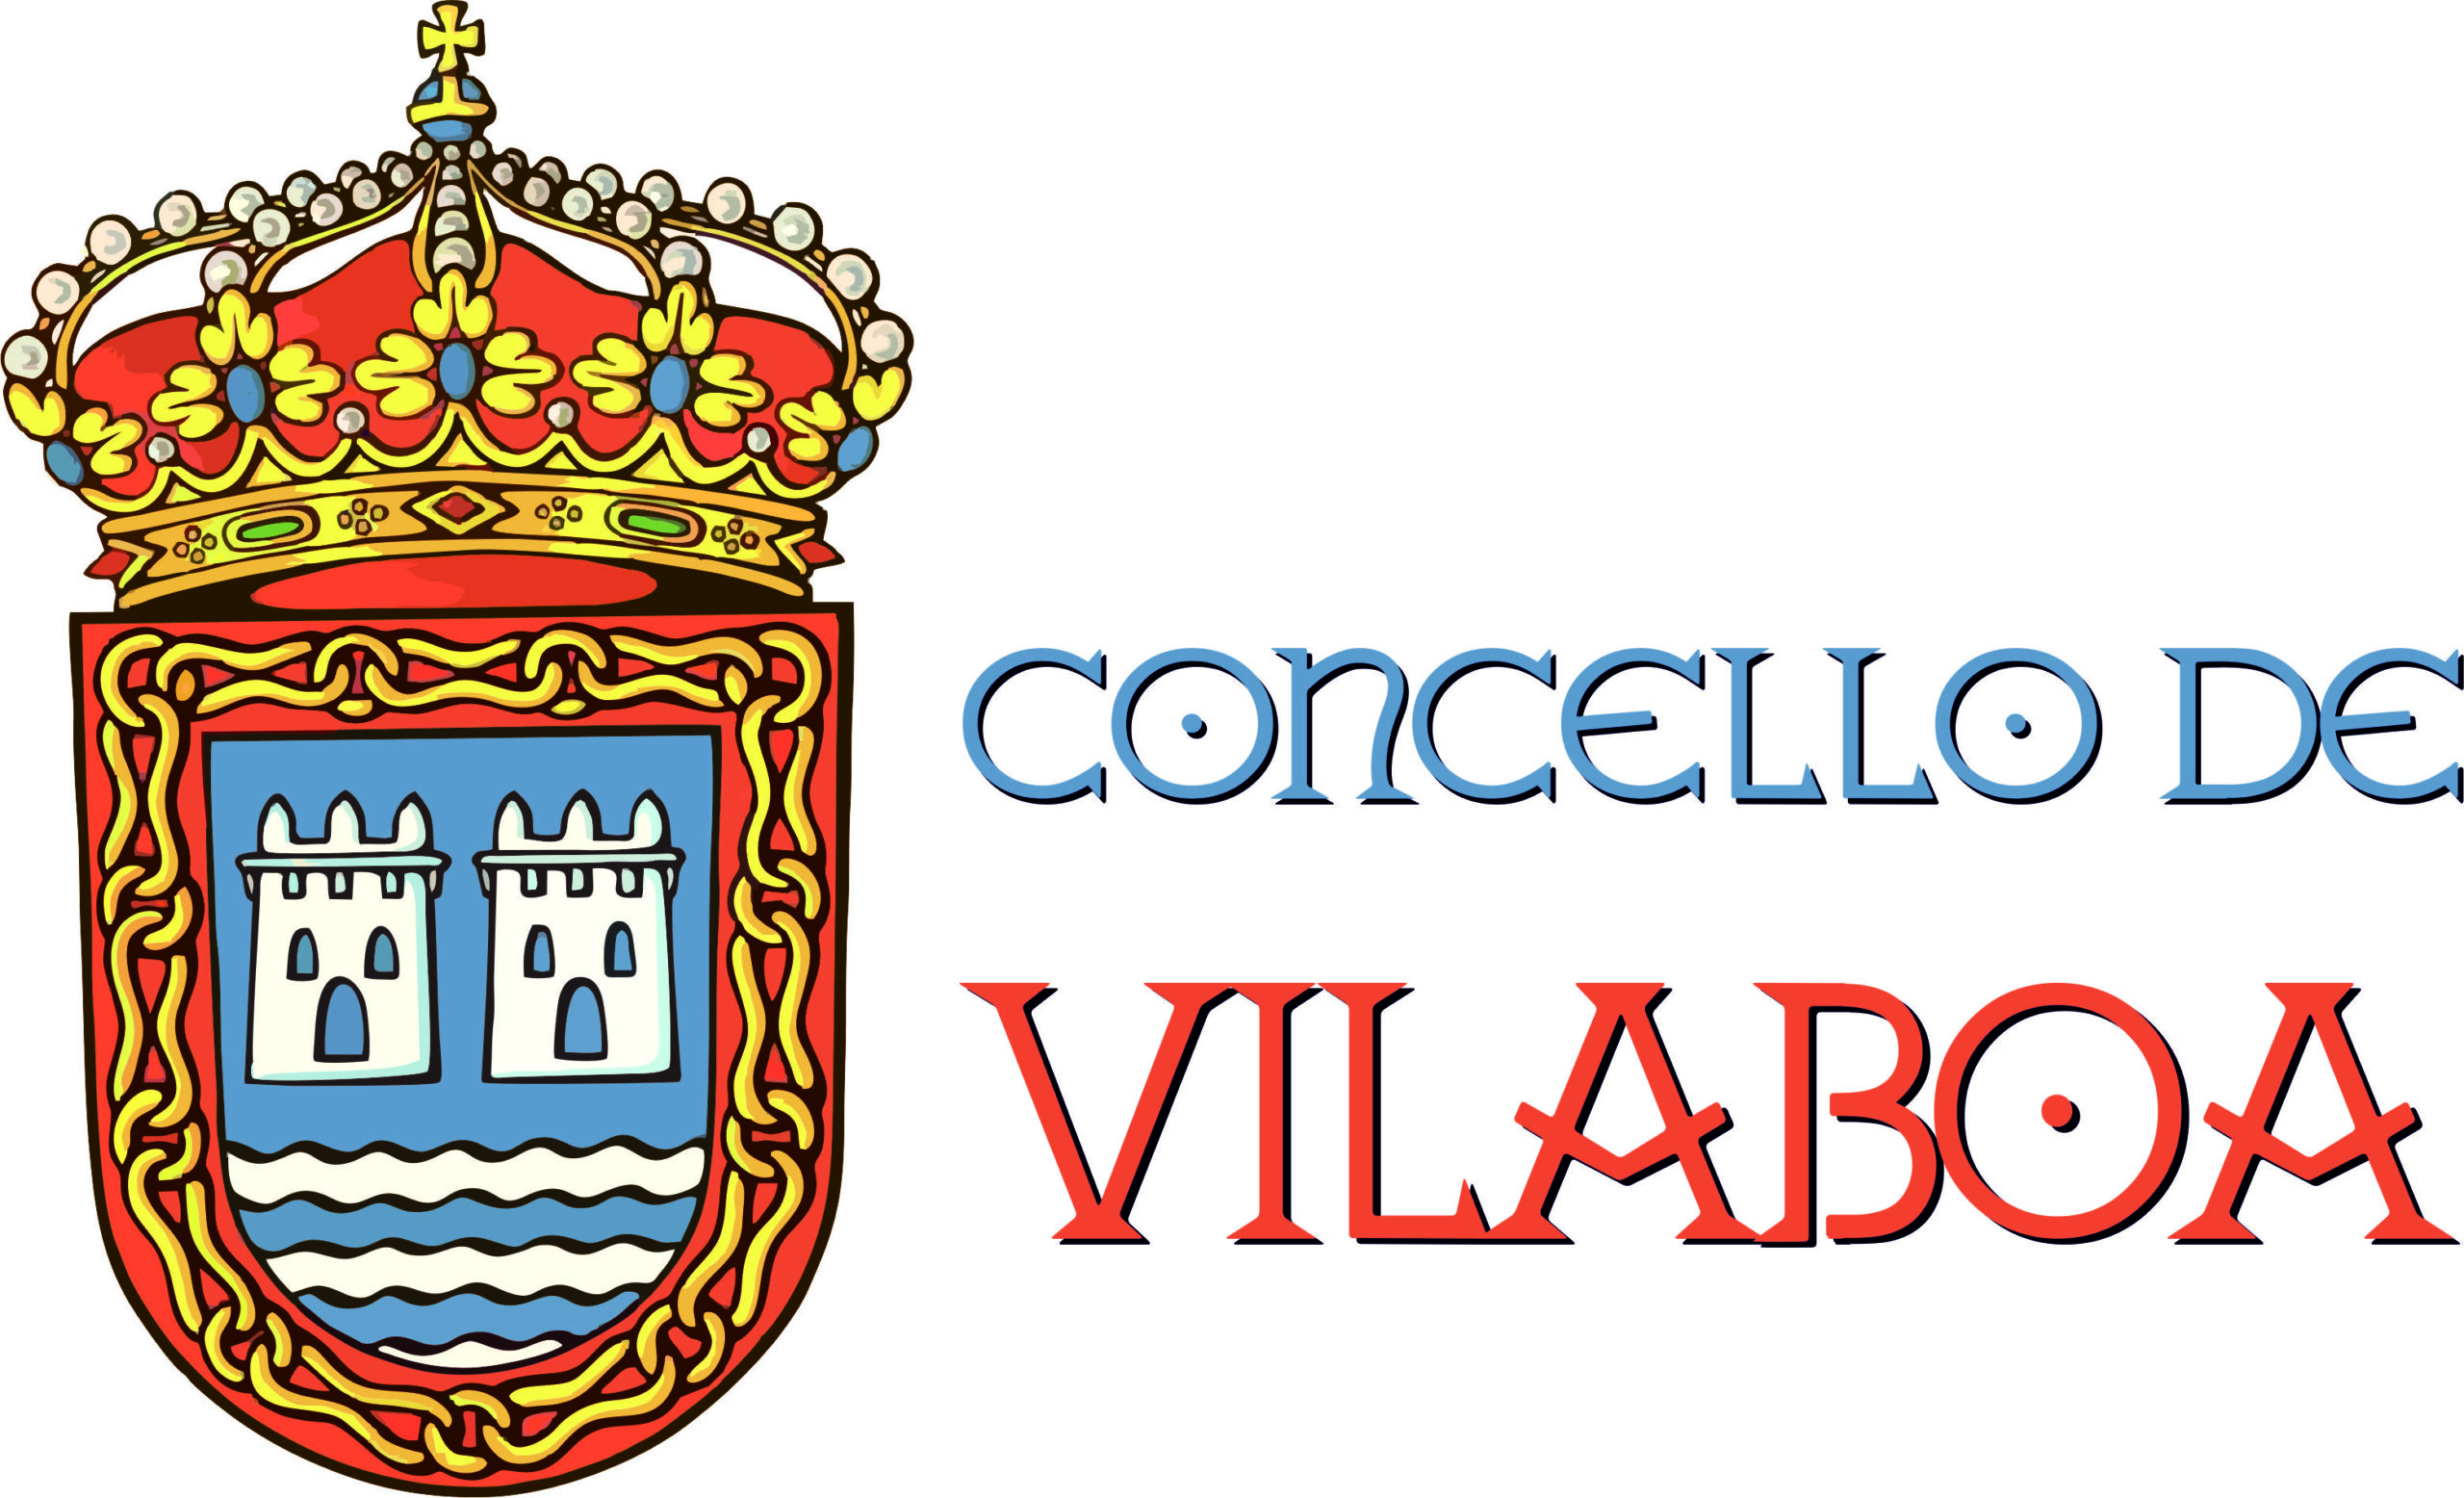 Escudo concello de Vilaboa apaisado en formato jpg.